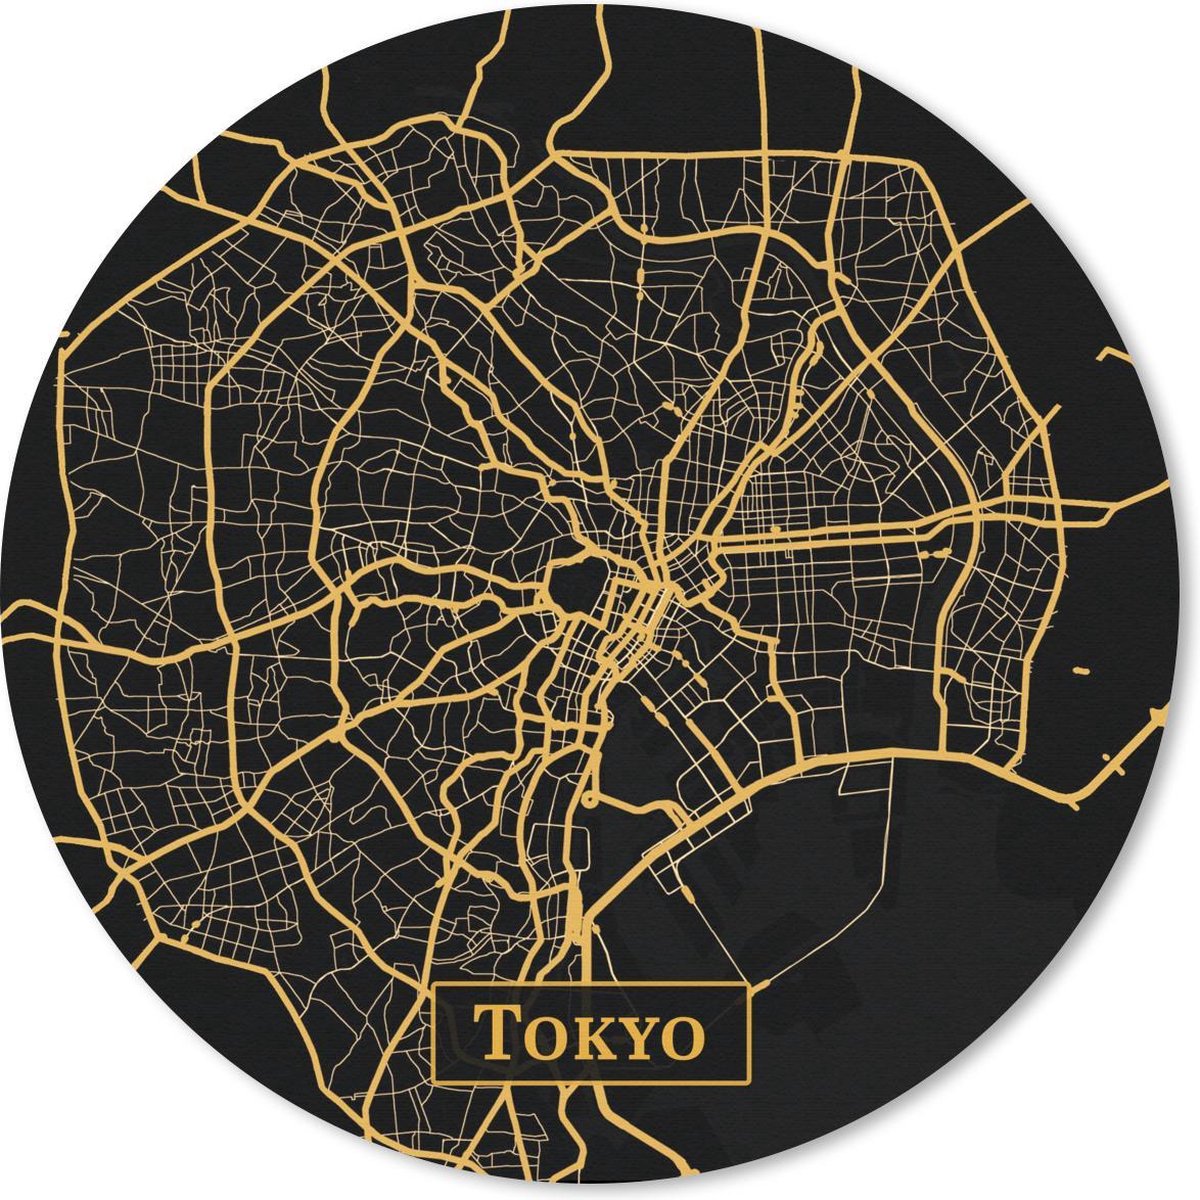 Muismat - Mousepad - Rond - Kaart - Tokyo - Goud - Zwart - 20x20 cm - Ronde muismat